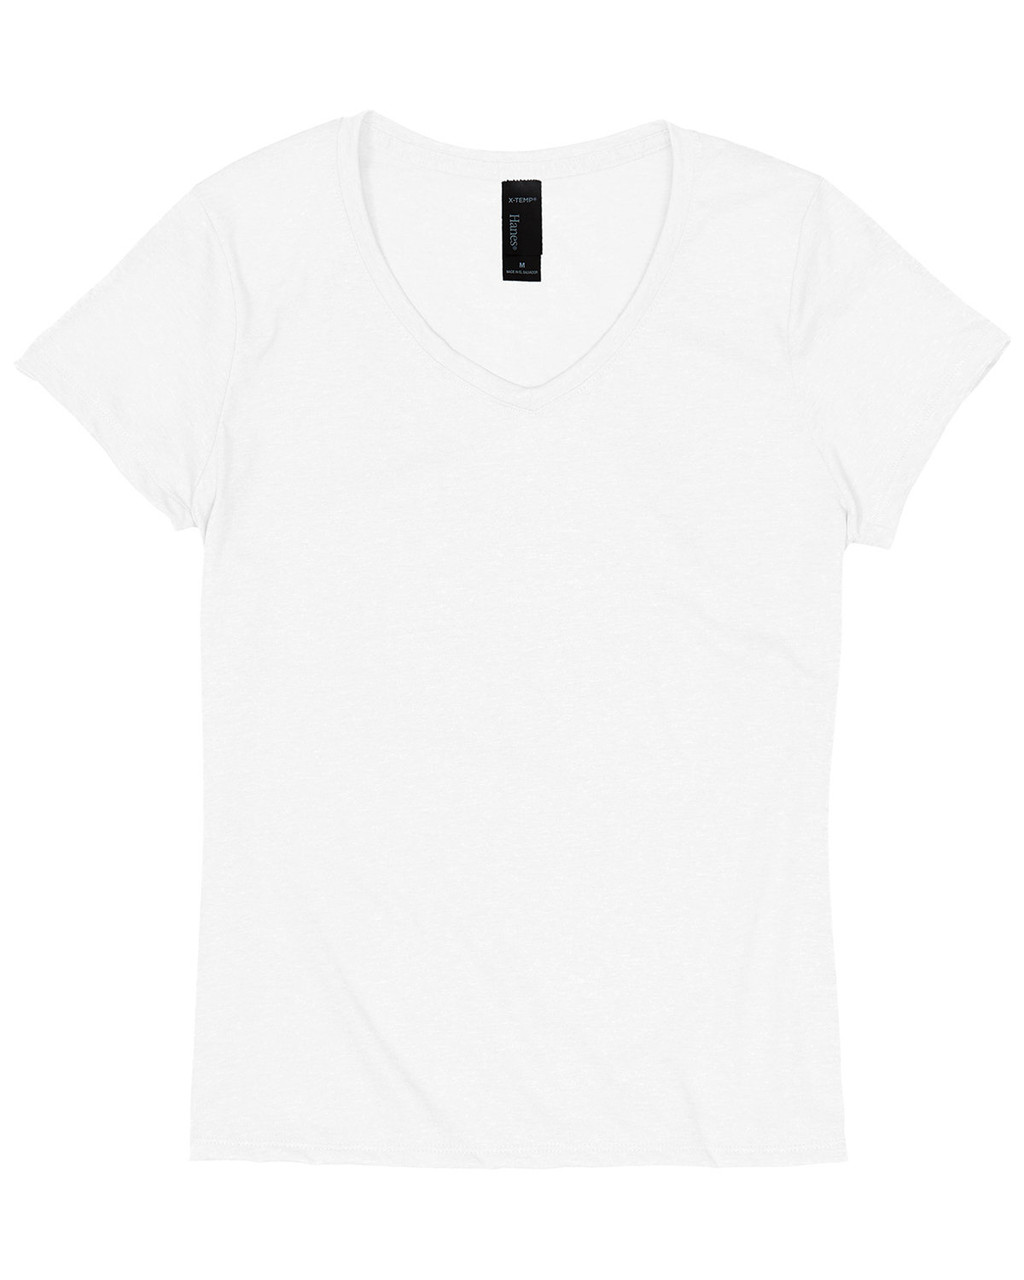 Hanes 42VT Triblend V-Neck T-Shirt - ClothingAuthority.com